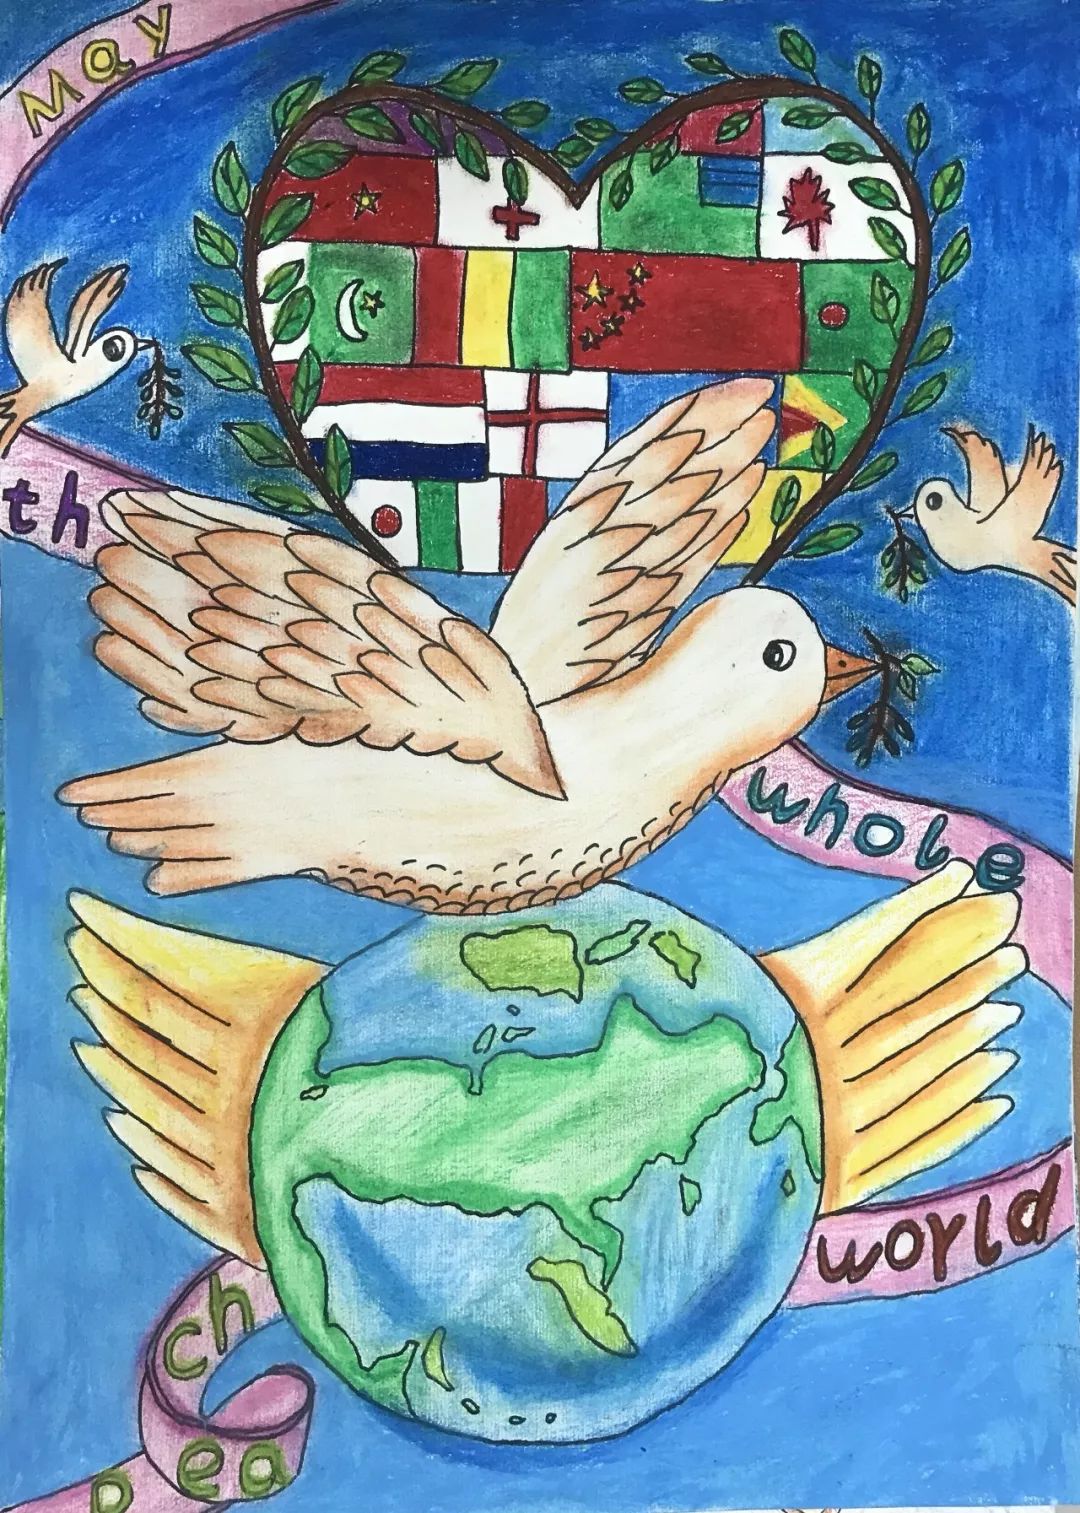 世界和平主题海报图片